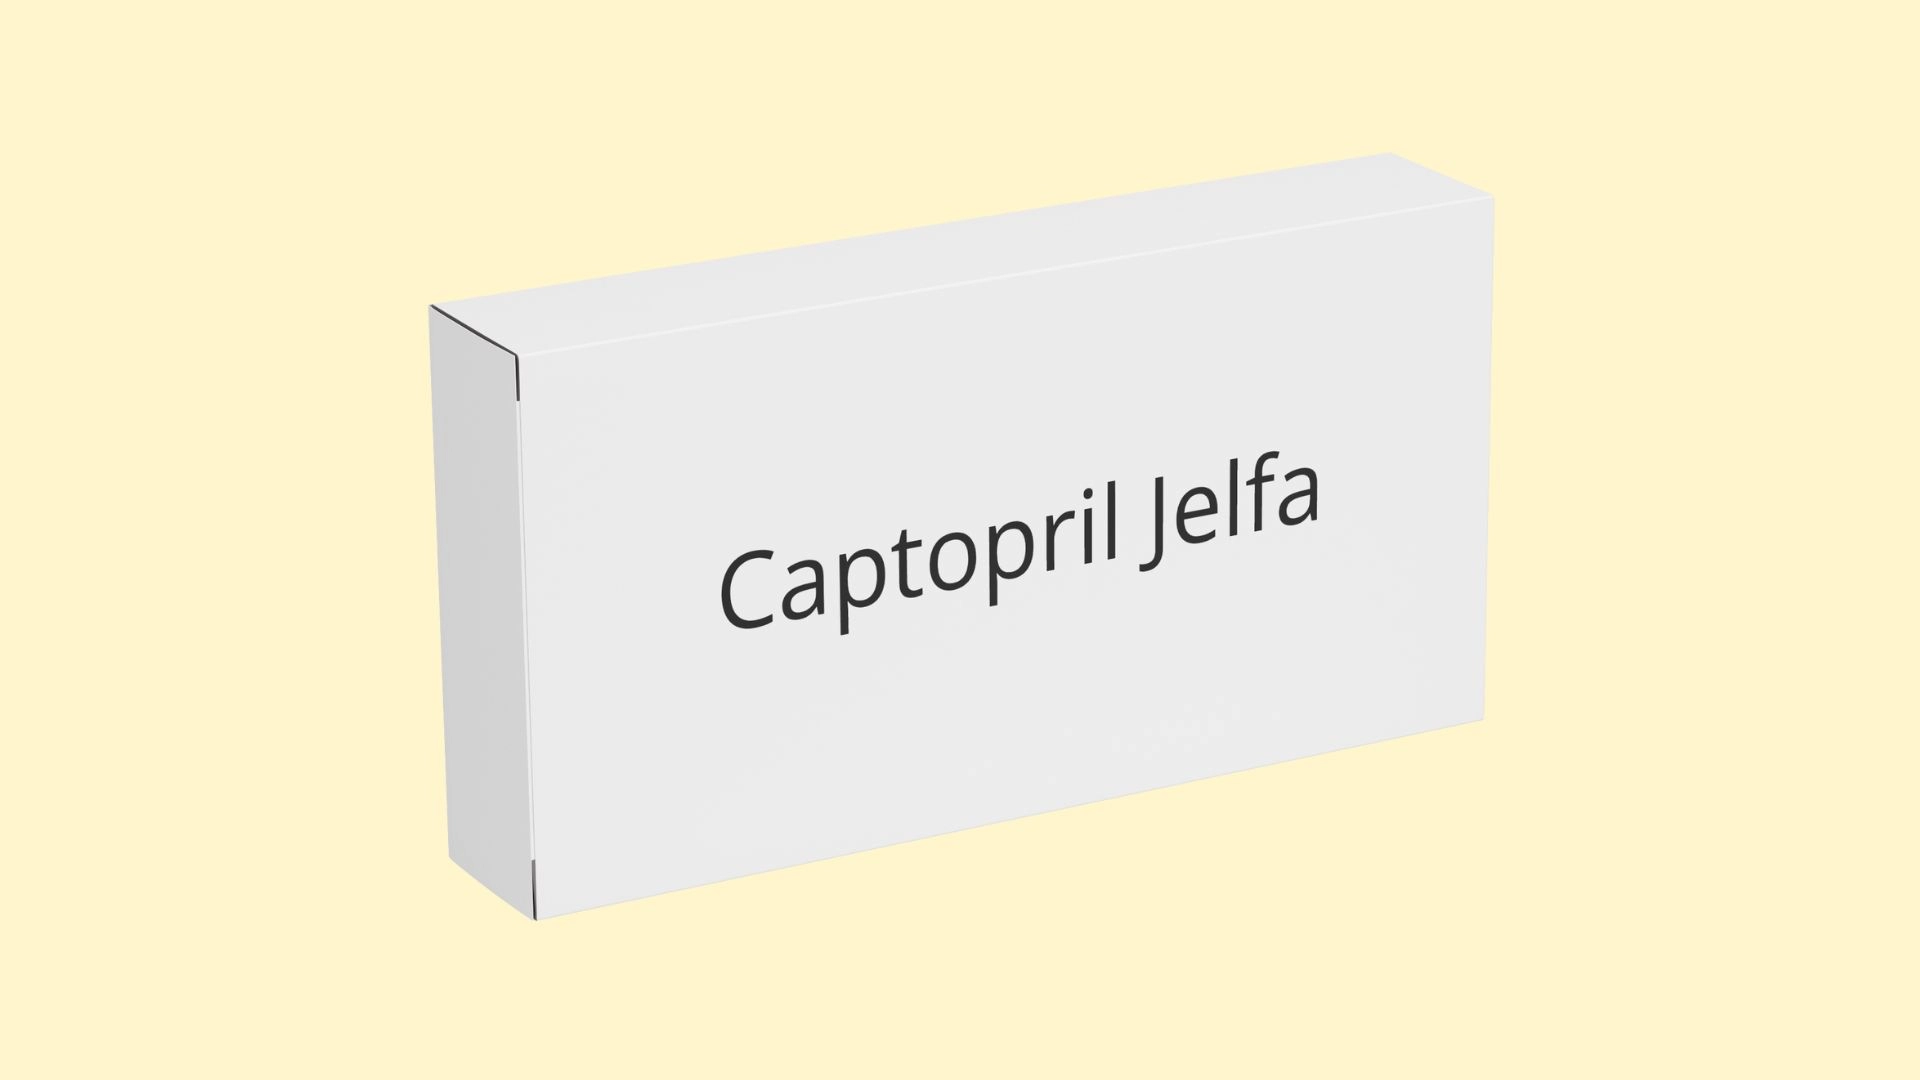 Captopril Jelfa   E recepta   recepta online z konsultacją | cena  dawkowanie  przeciwwskazania